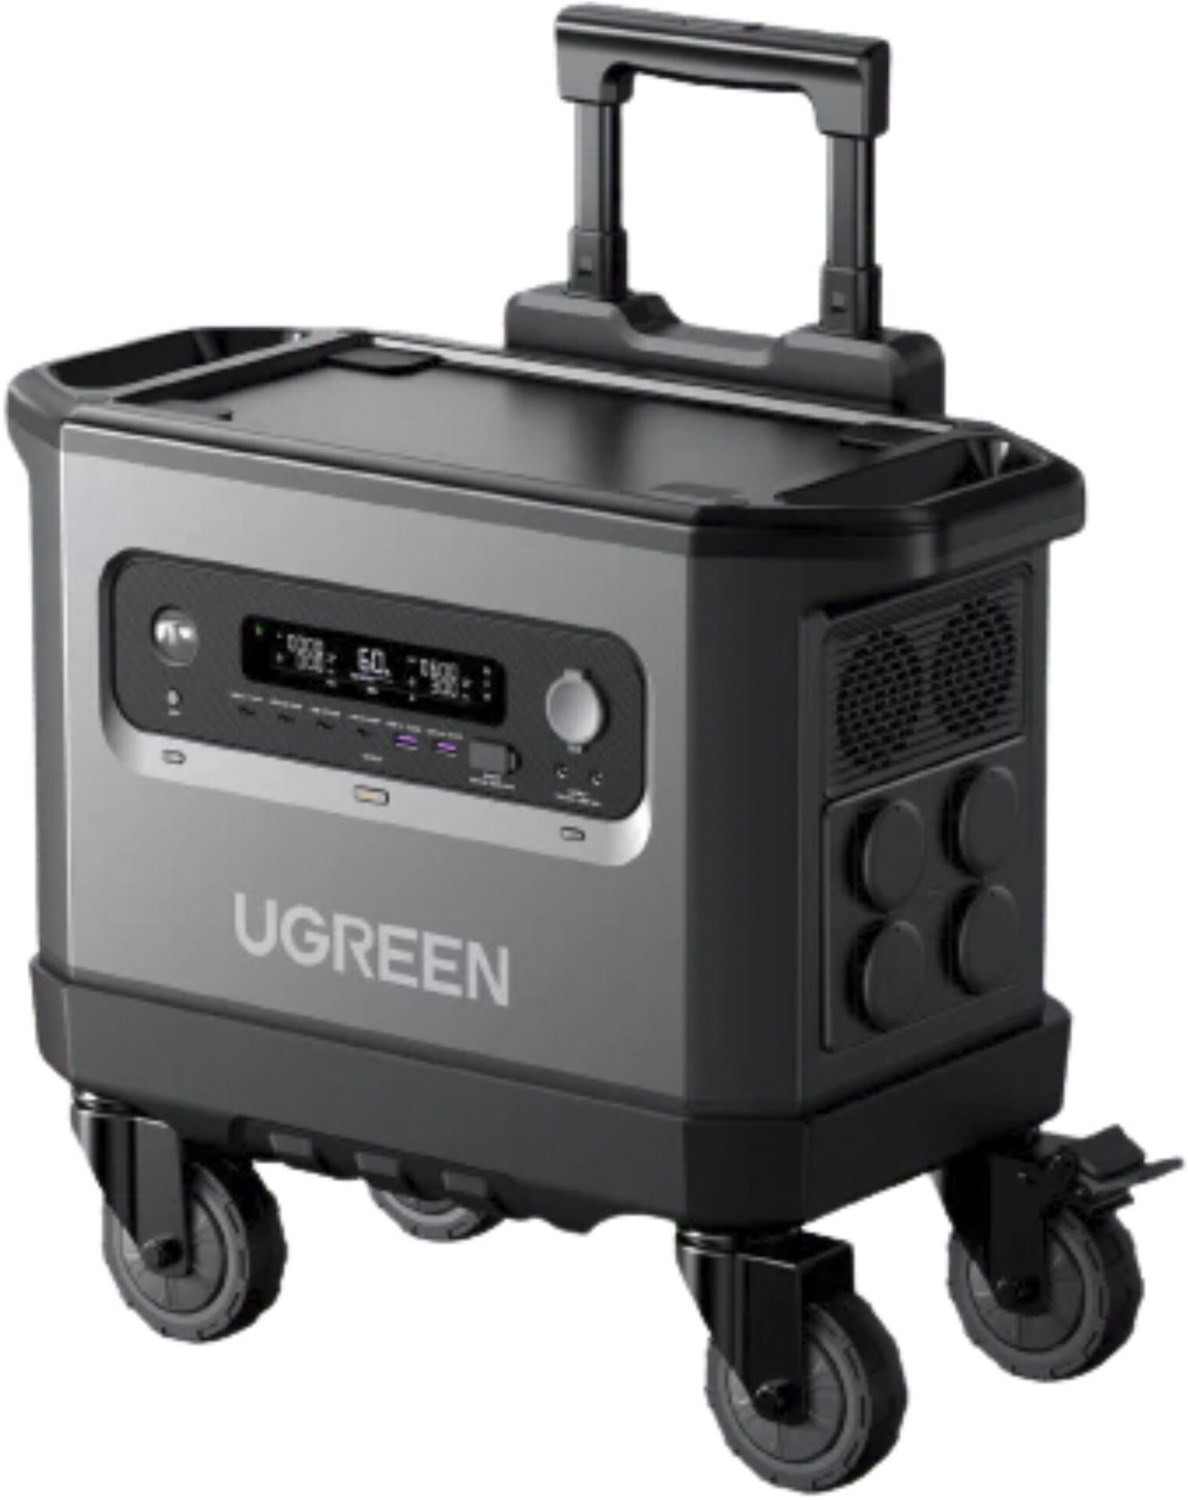 PowerRoam GS2200 (2300W) Powerstation von UGREEN